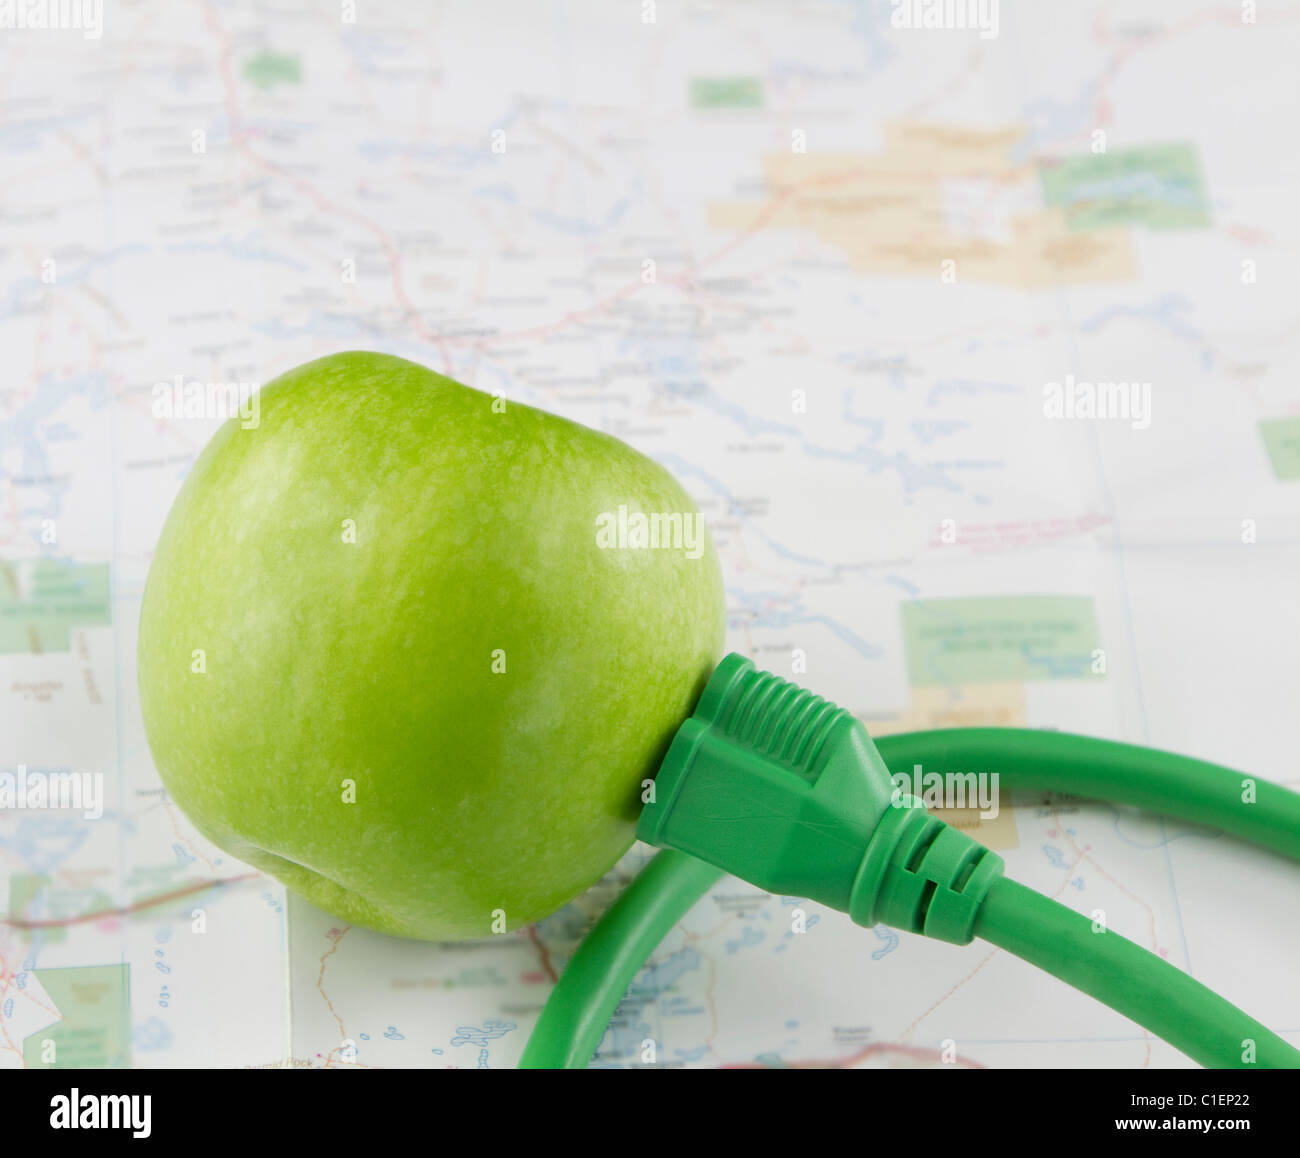 Grüner Apfel mit grünen elektrischen Stecker befindet sich auf einer unscharfen Fokus-Karte in einem Bild des morgigen grüne Energieinnovation Stockfoto